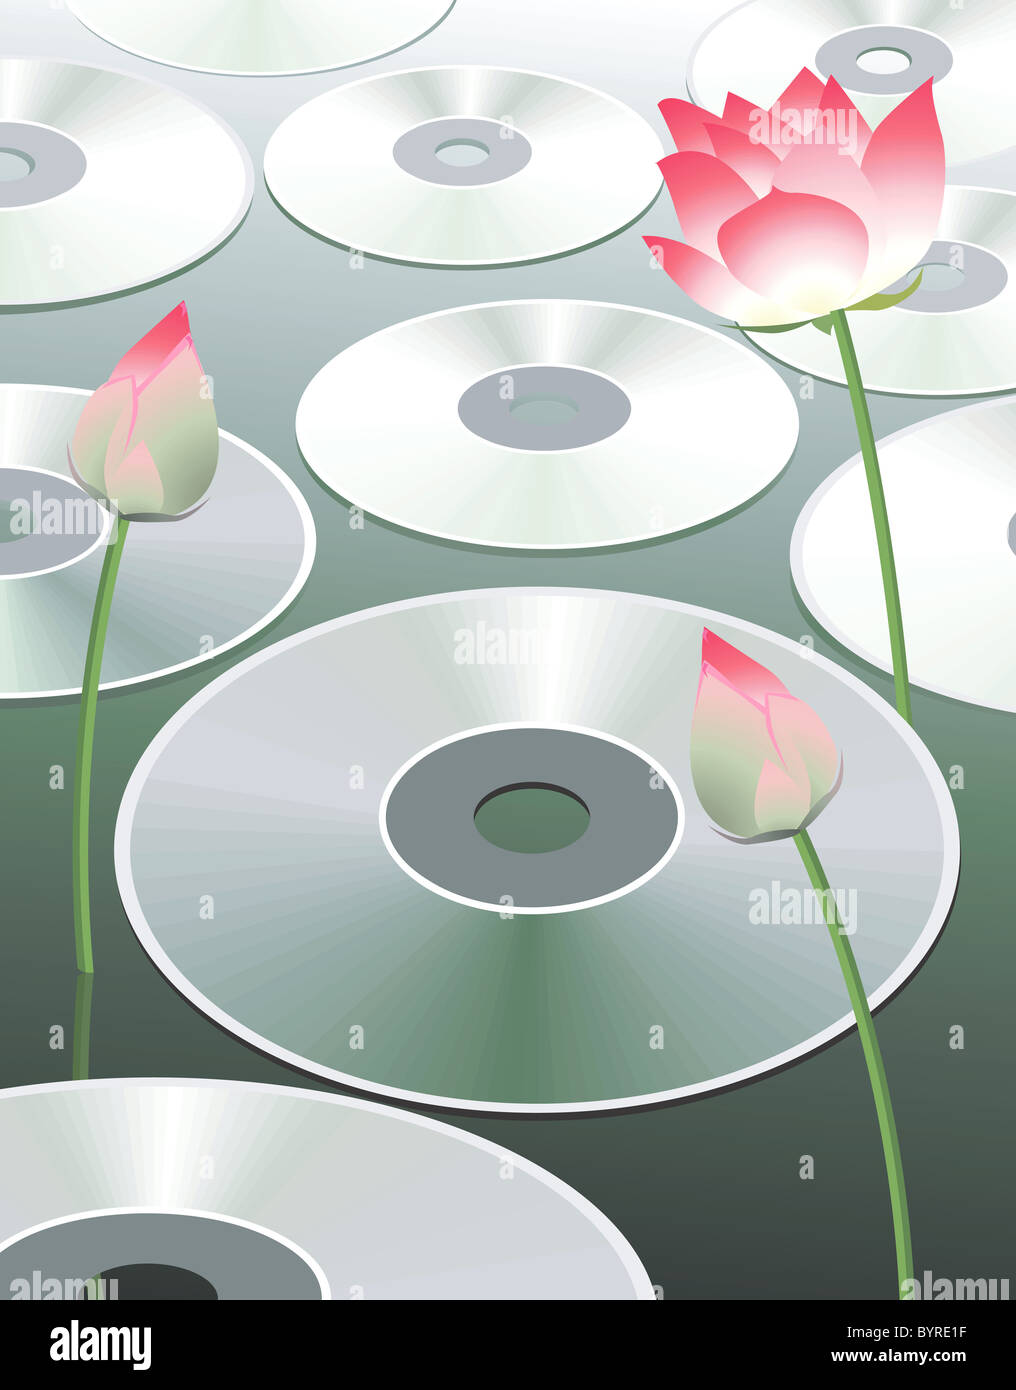 Discs and lotus Stock Photo